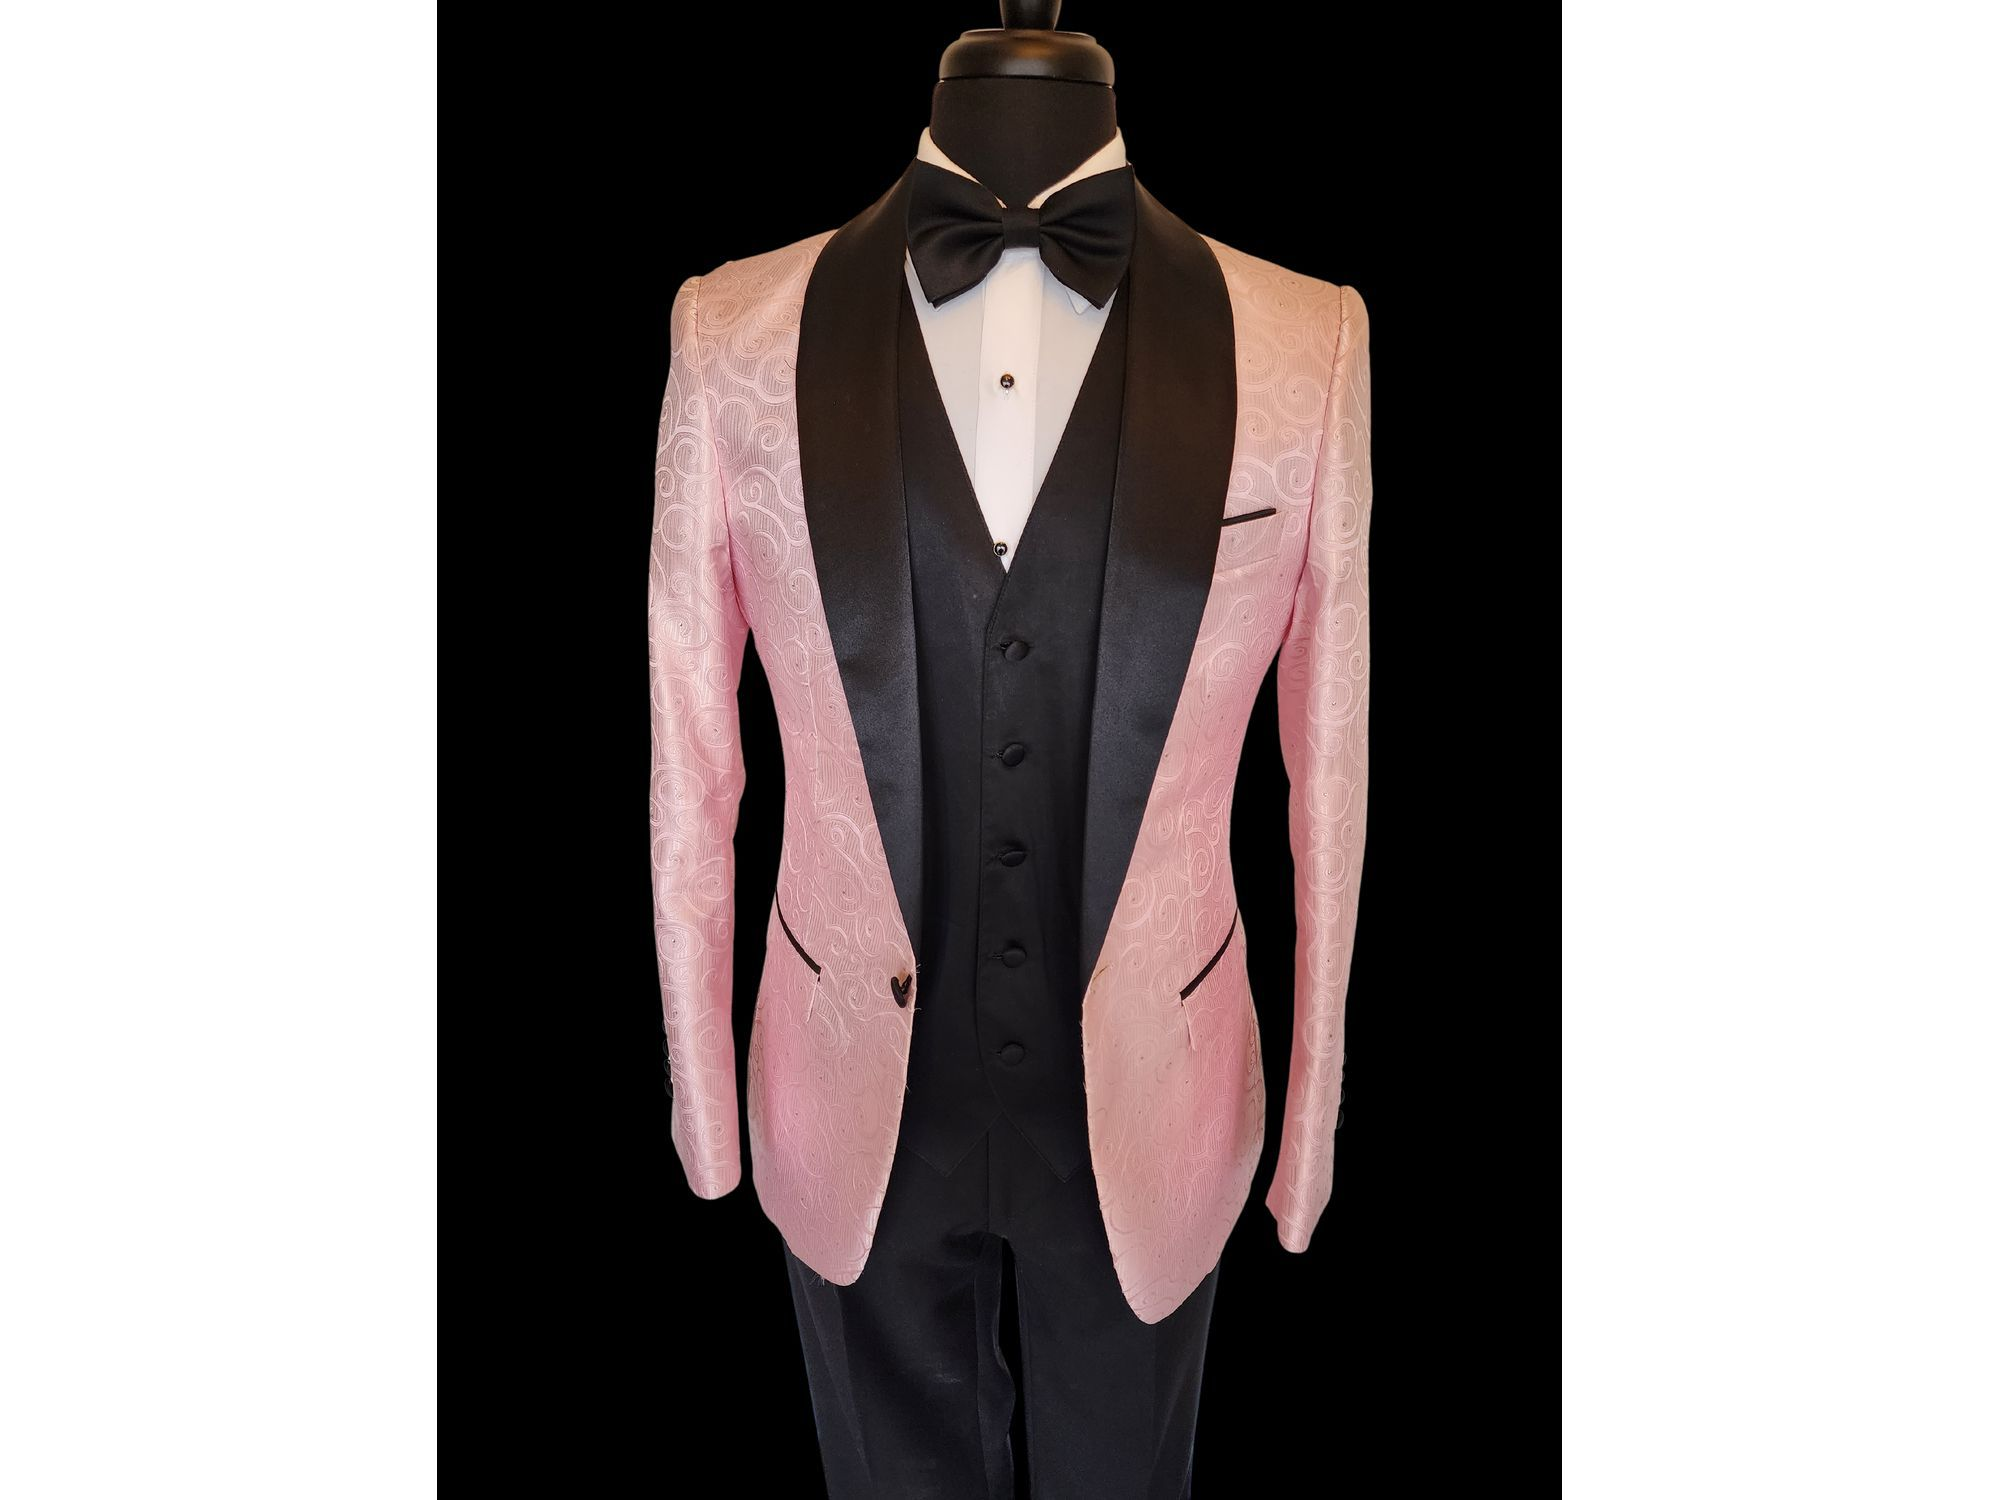 -Rainwater's -Rainwater's - Tuxedo Rental - Pink Swirl & Dot Textured Shawl Tuxedo Rental -